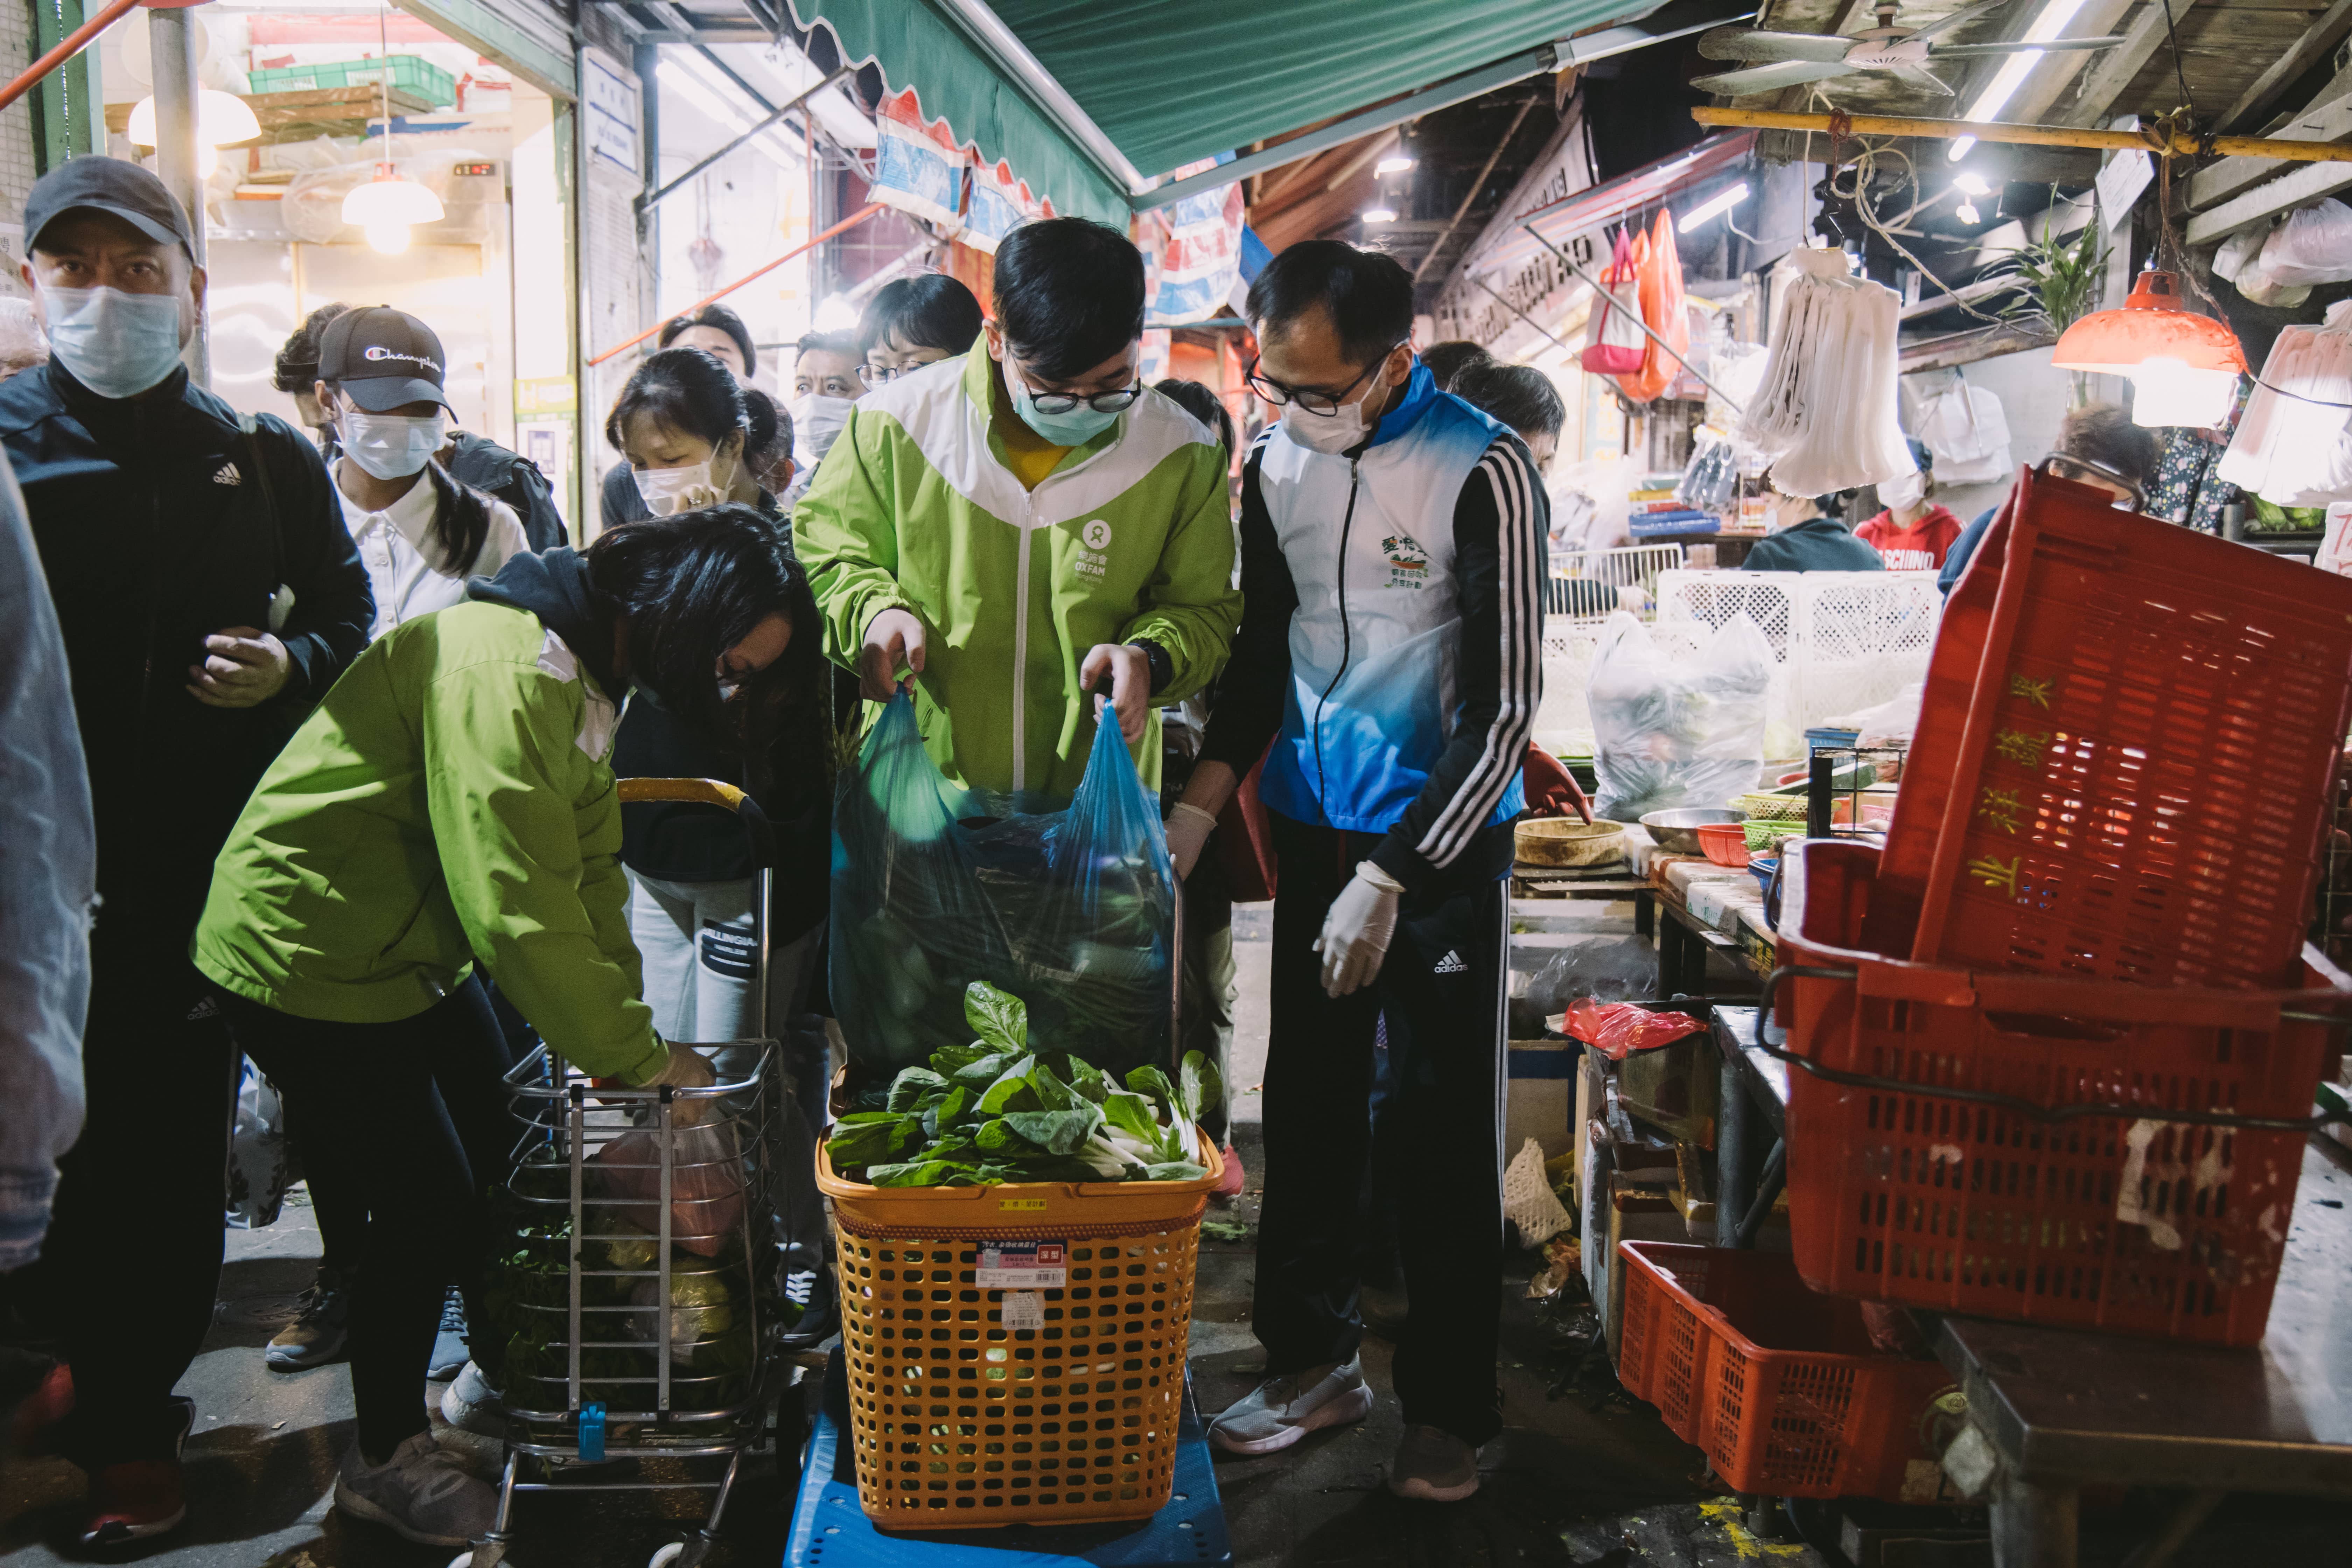 菜贩捐出会当日未卖出但状况良好的蔬菜，我们会将之分发予区内有需要家庭。（摄影︰Pui Cheng Lei / 乐施会）